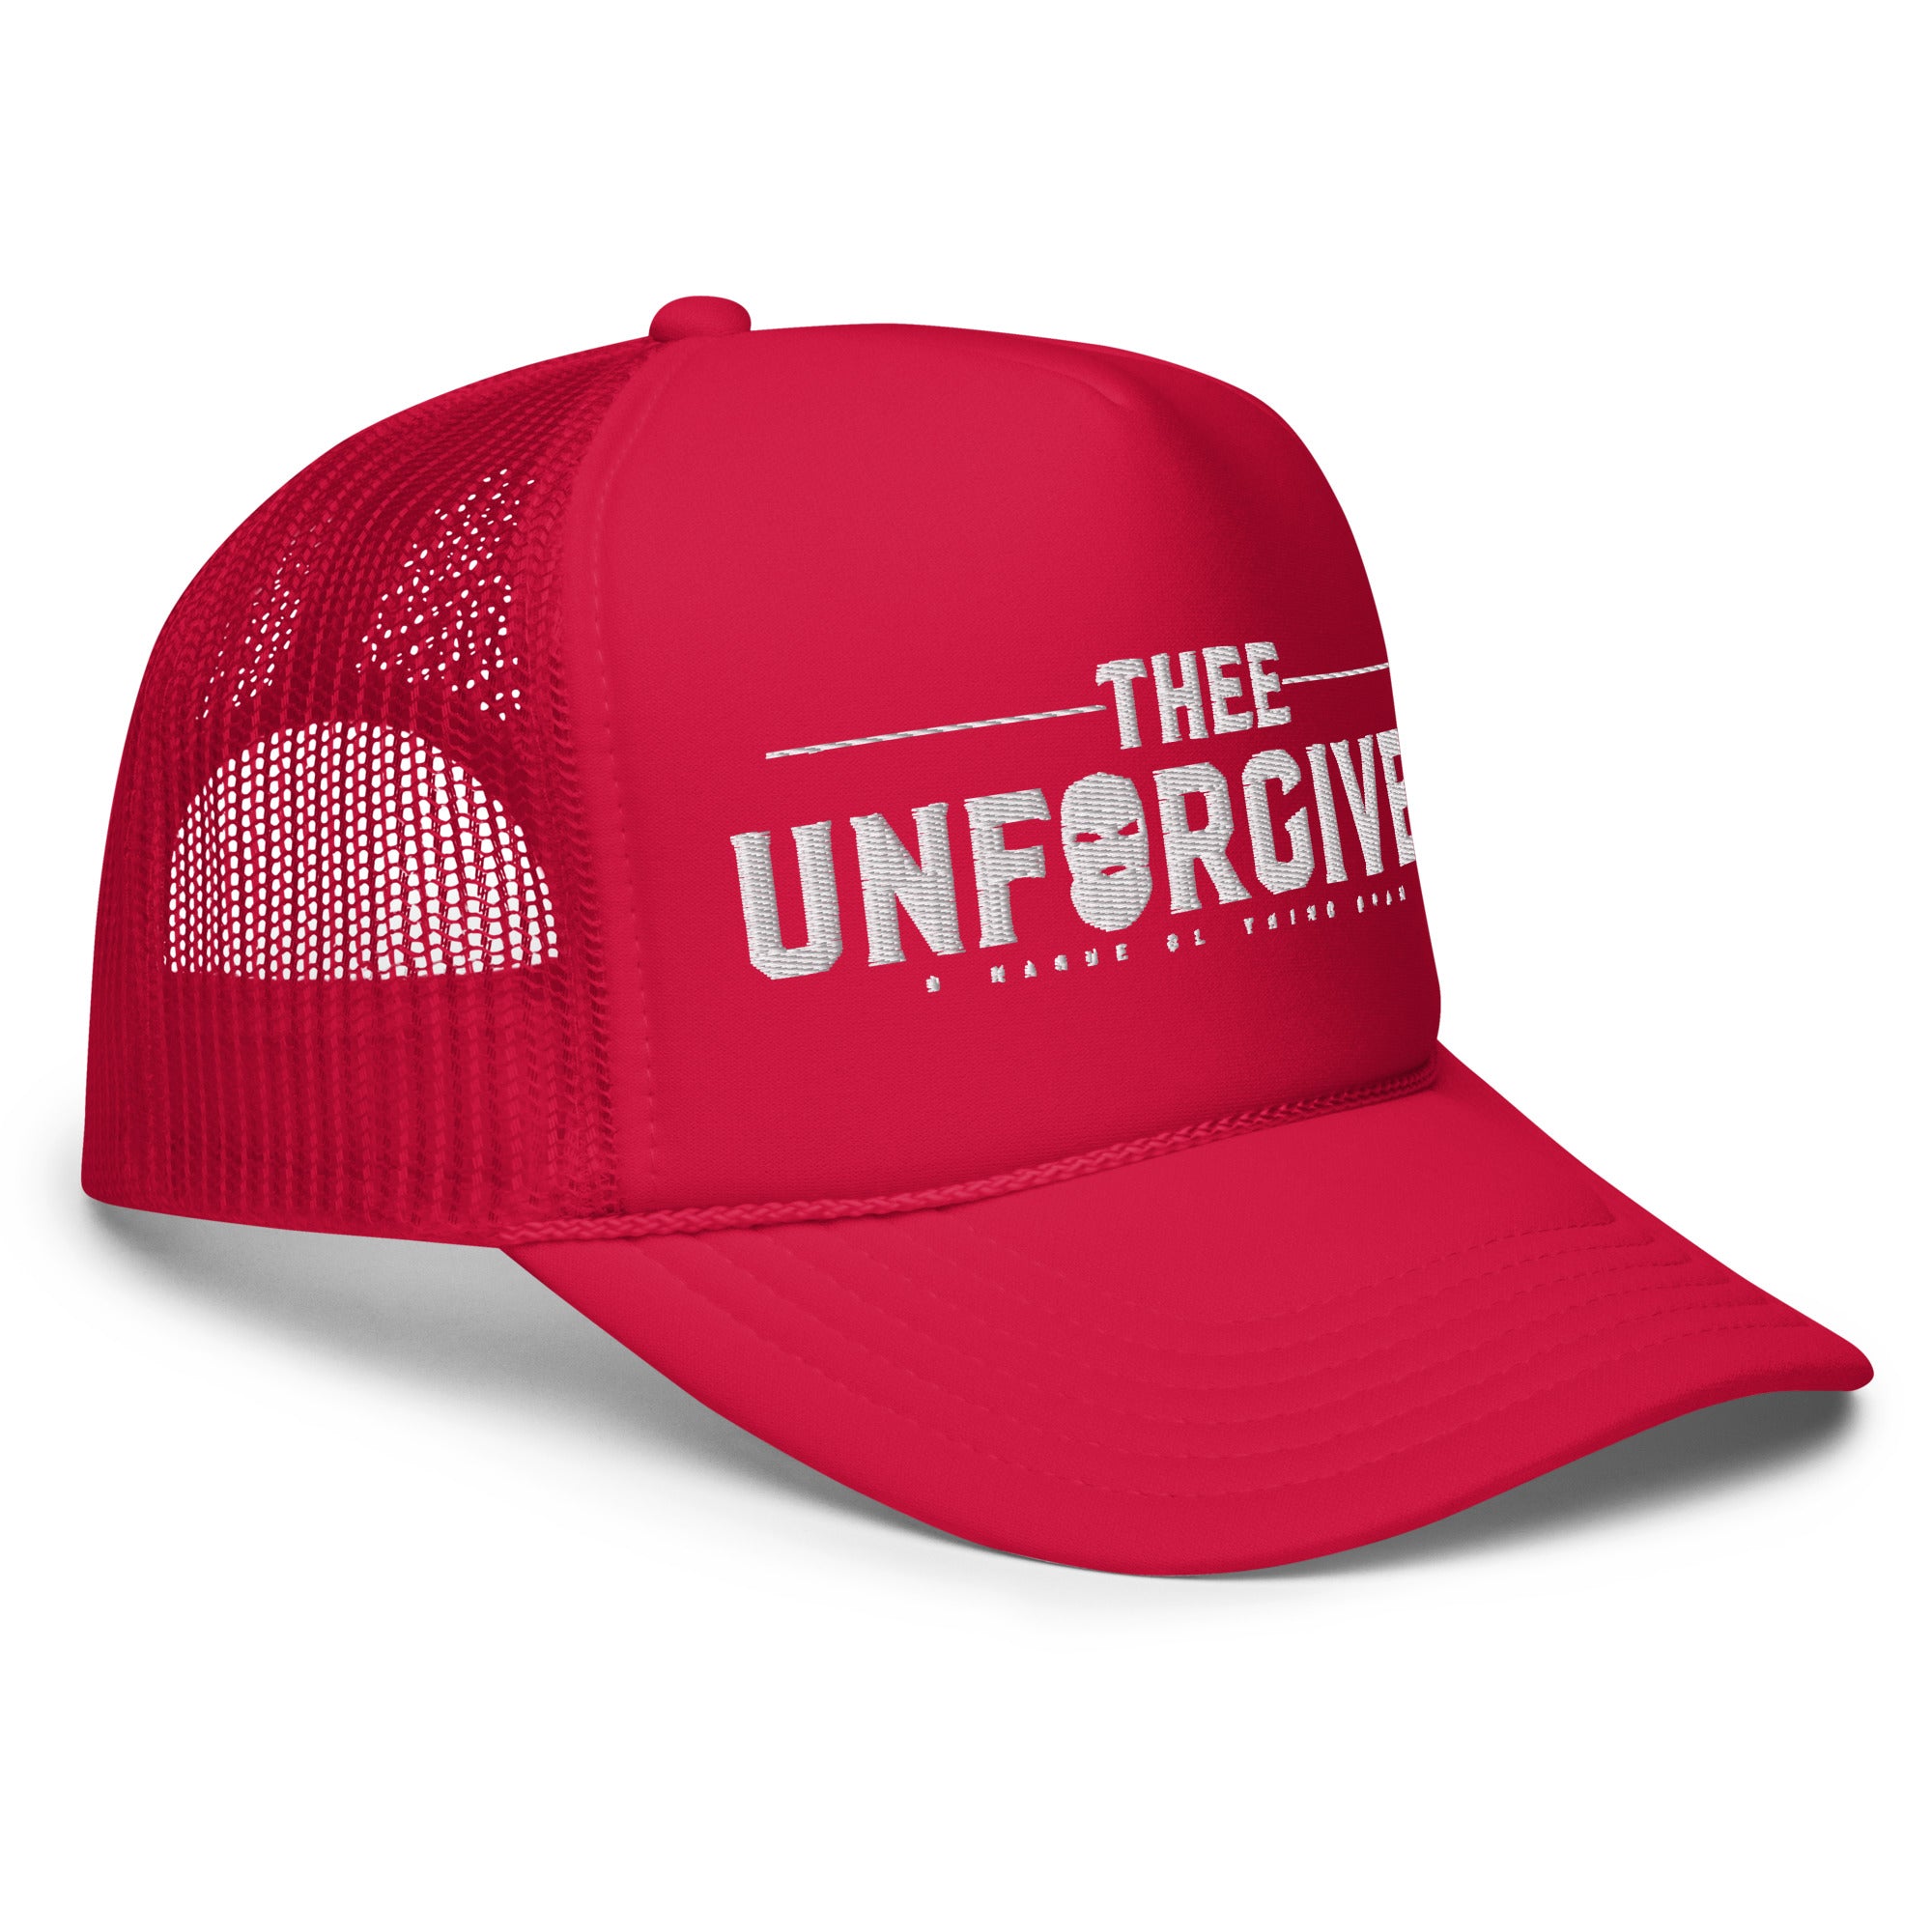 Thee Unforgiven Foam trucker hat